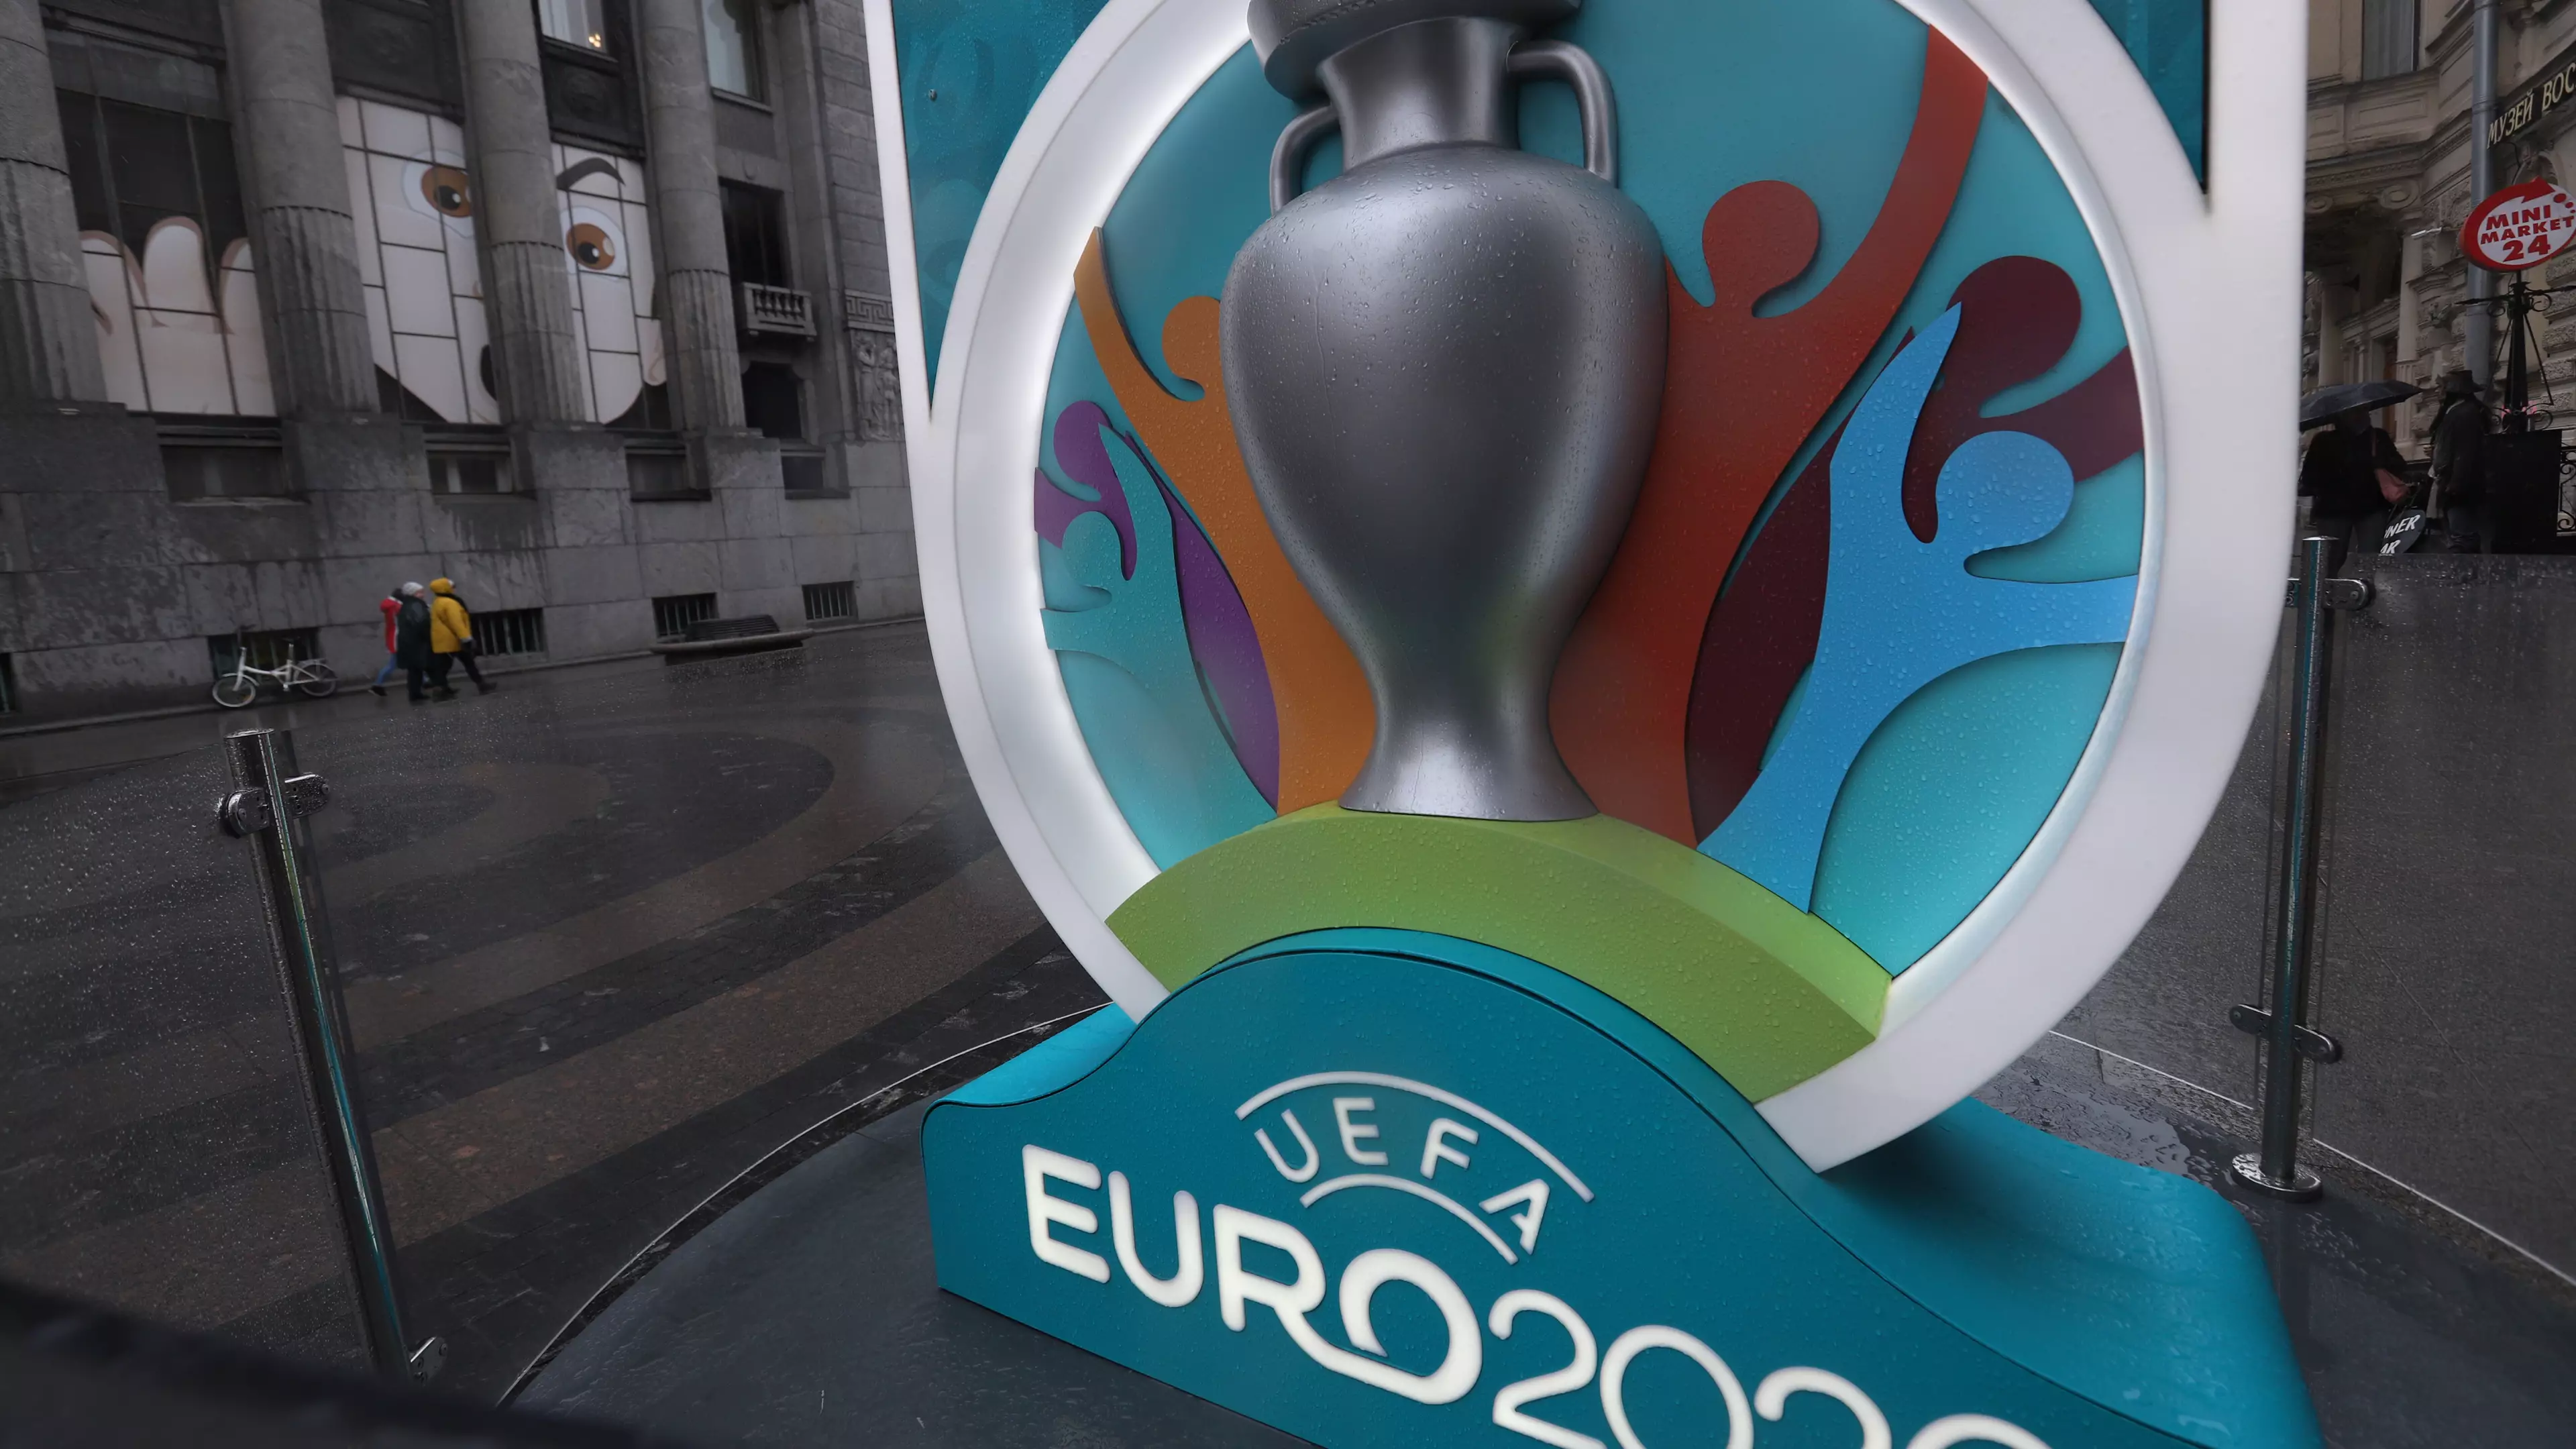 UEFA Euro 2020 Has Been Postponed Until 2021